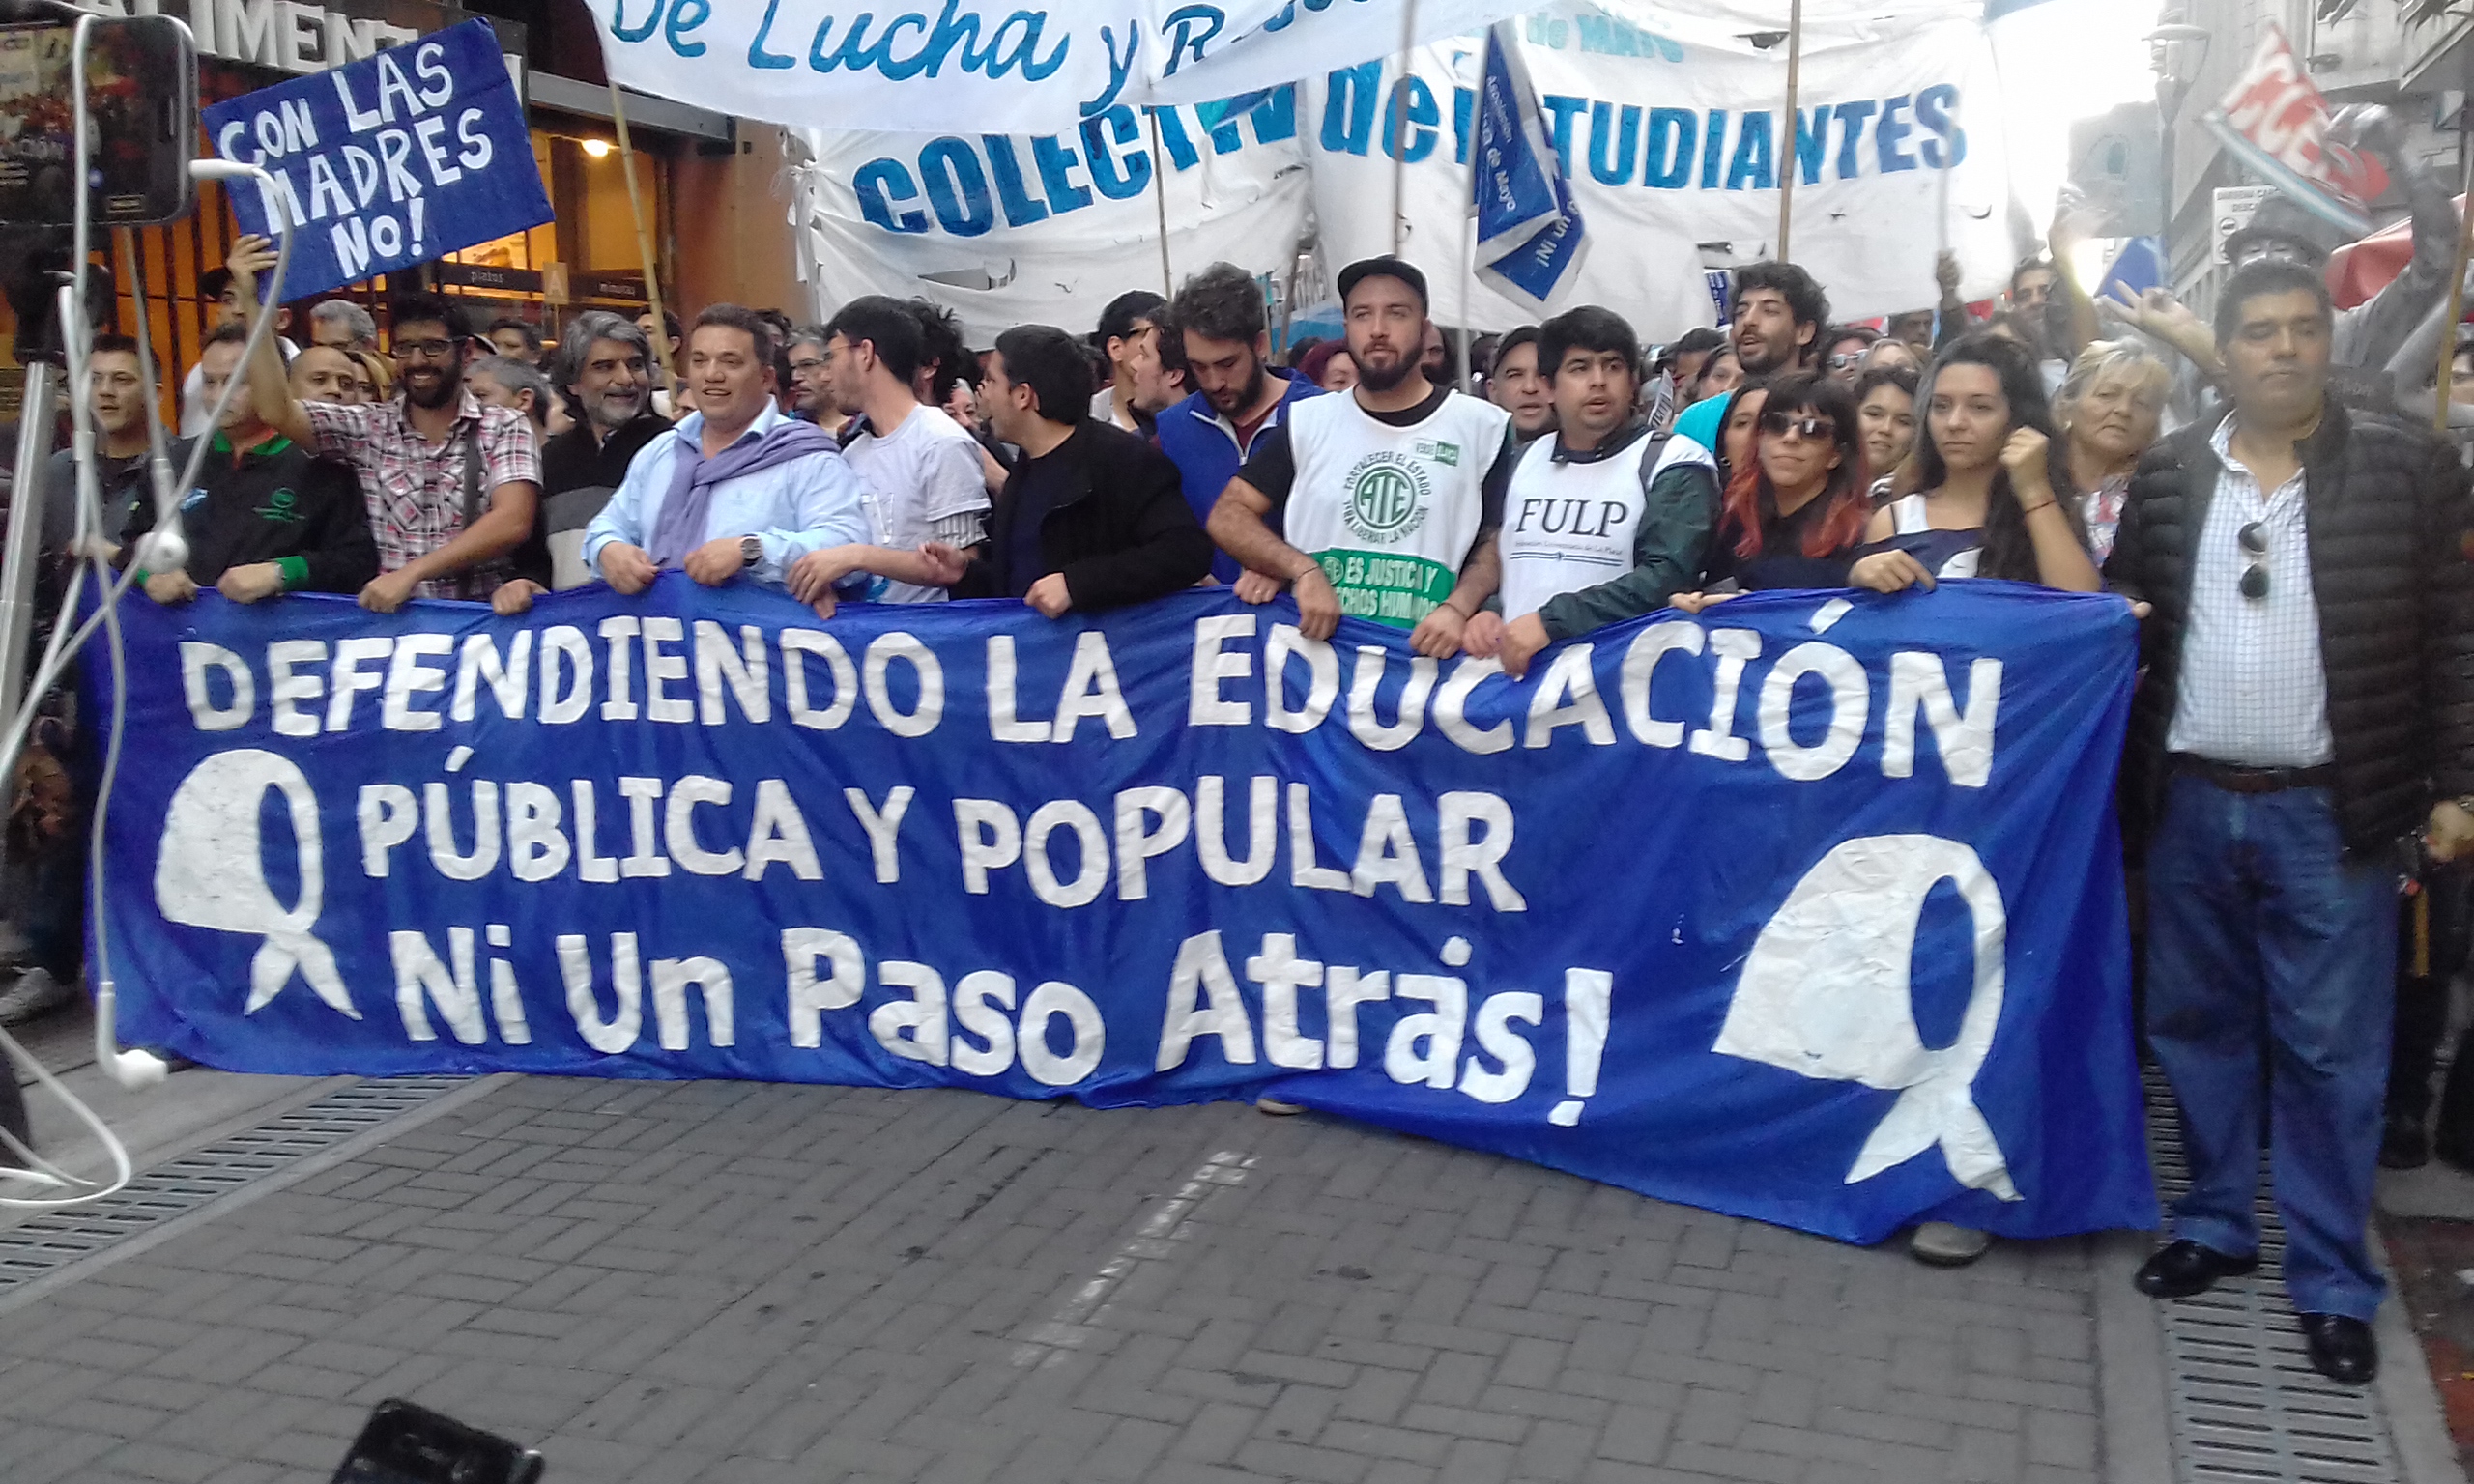 Marcha universitaria: paro y movilización en defensa de la educación pública, gratuita y de calidad 